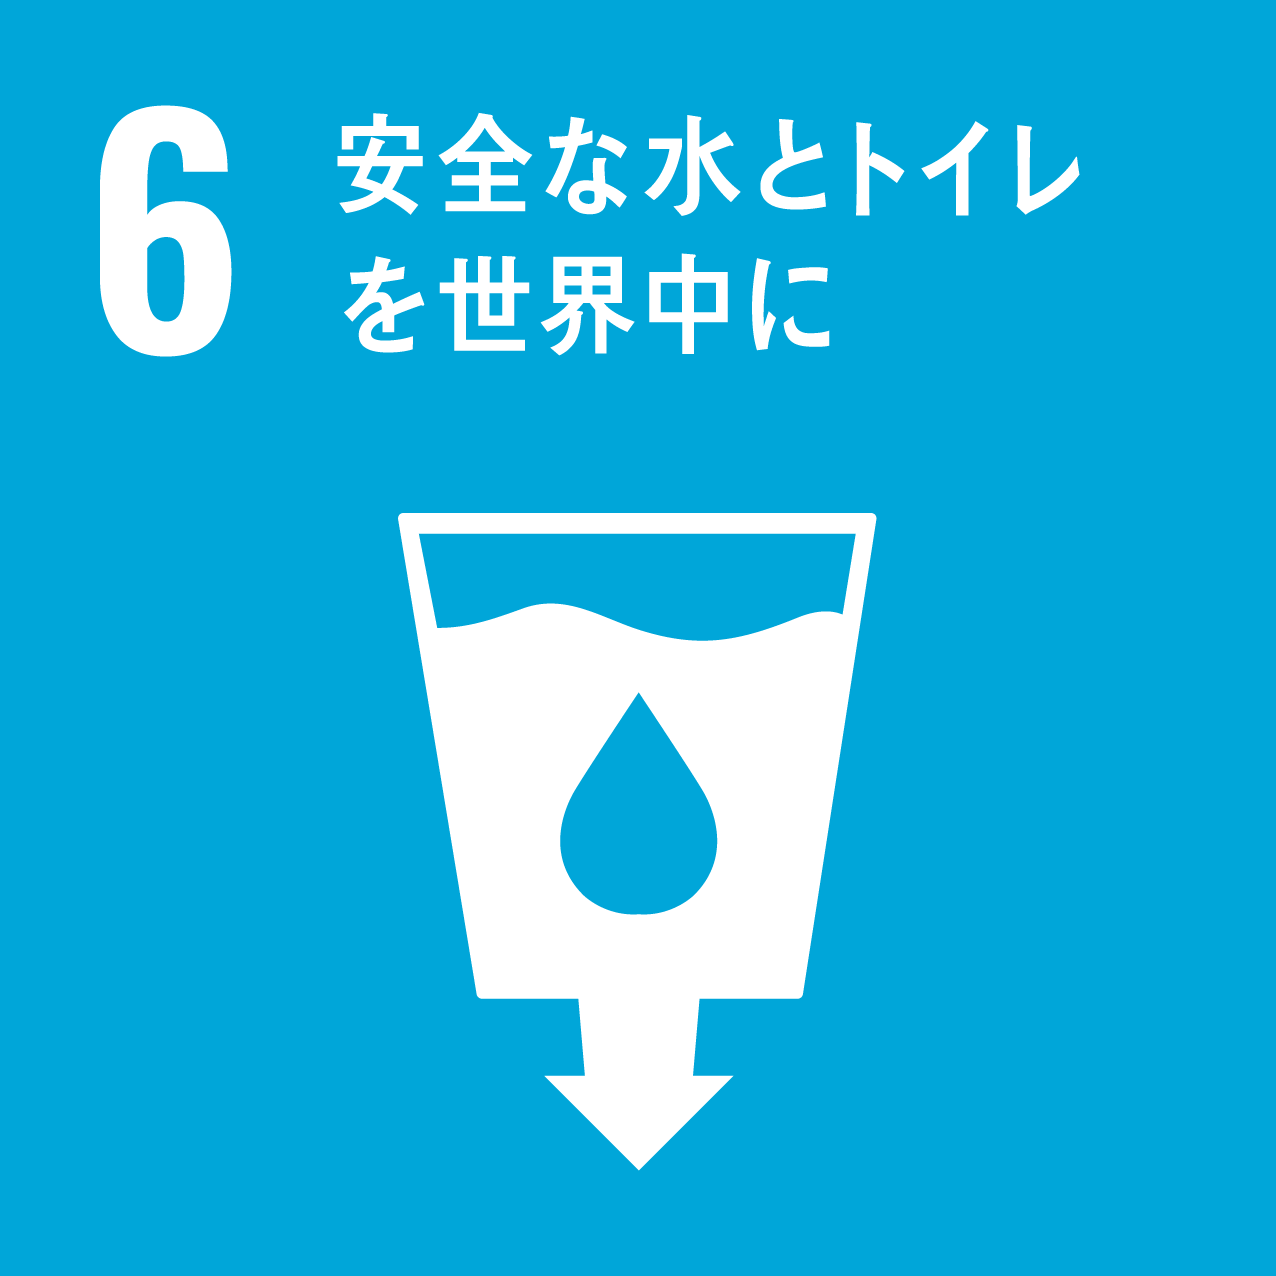 目標6「安全な水とトイレを世界中に」の画像